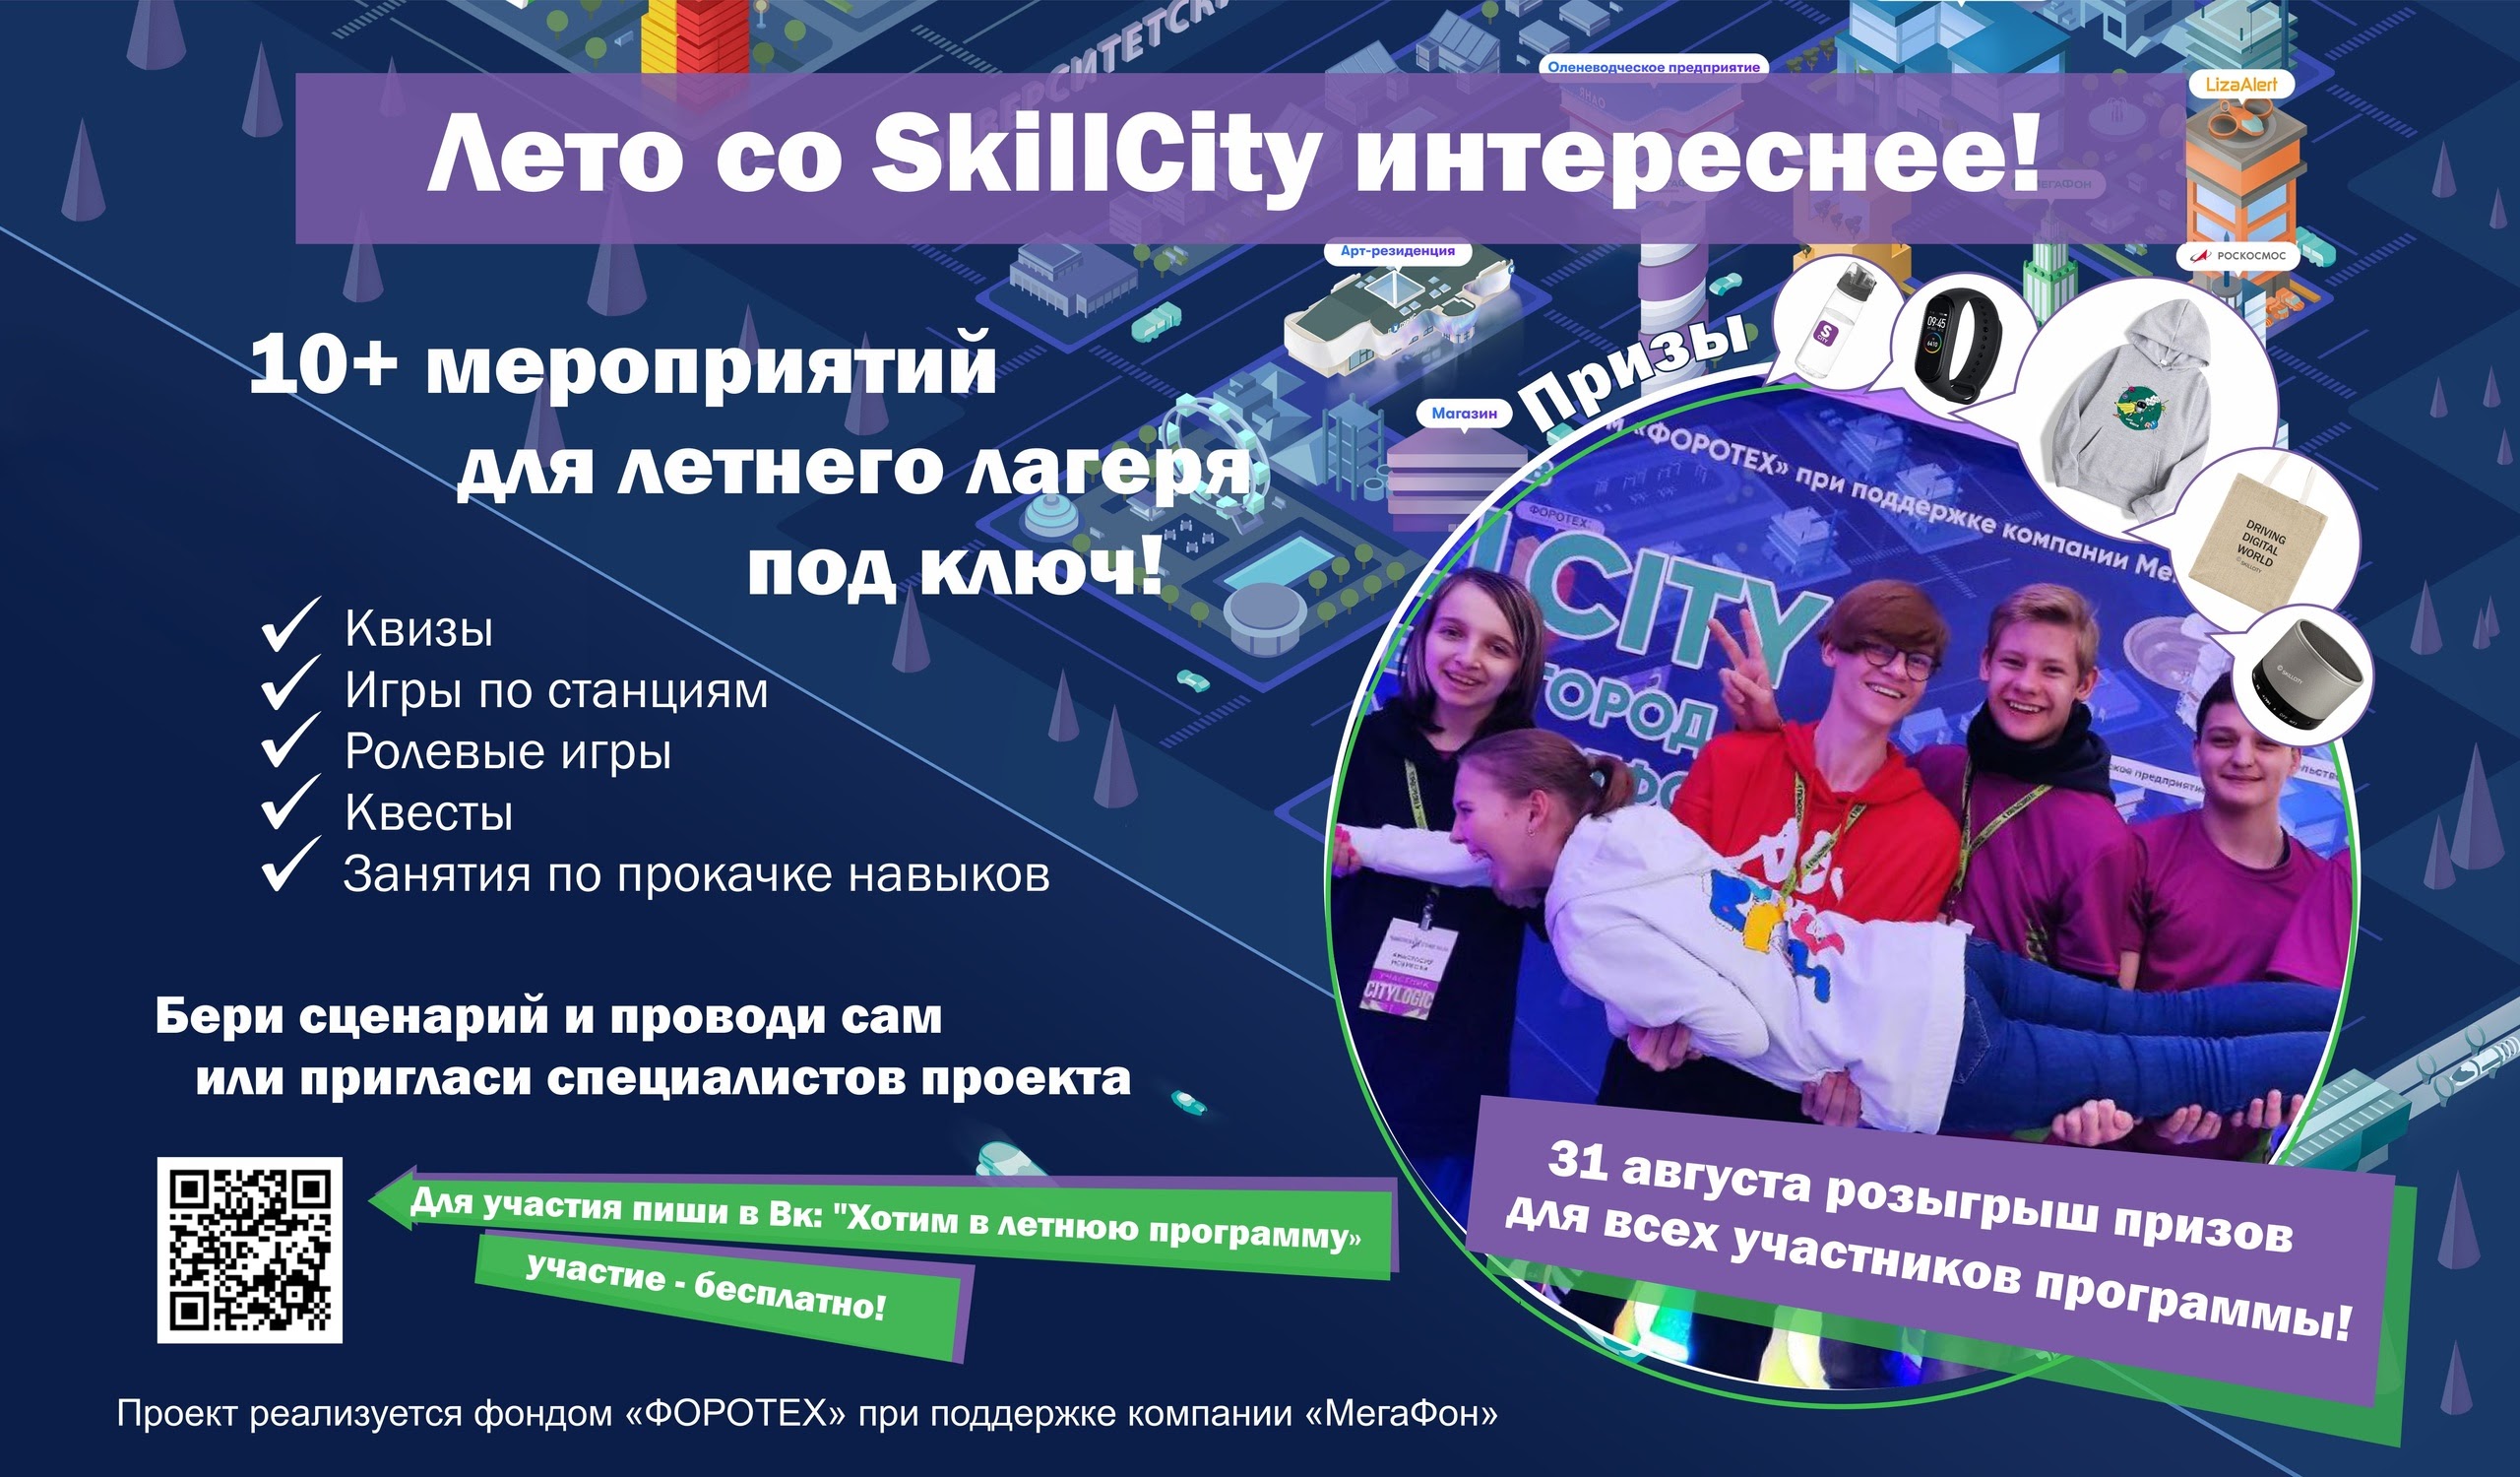 Бесплатная летняя программа от проекта «Справочно-игровой сервис SkillCity»